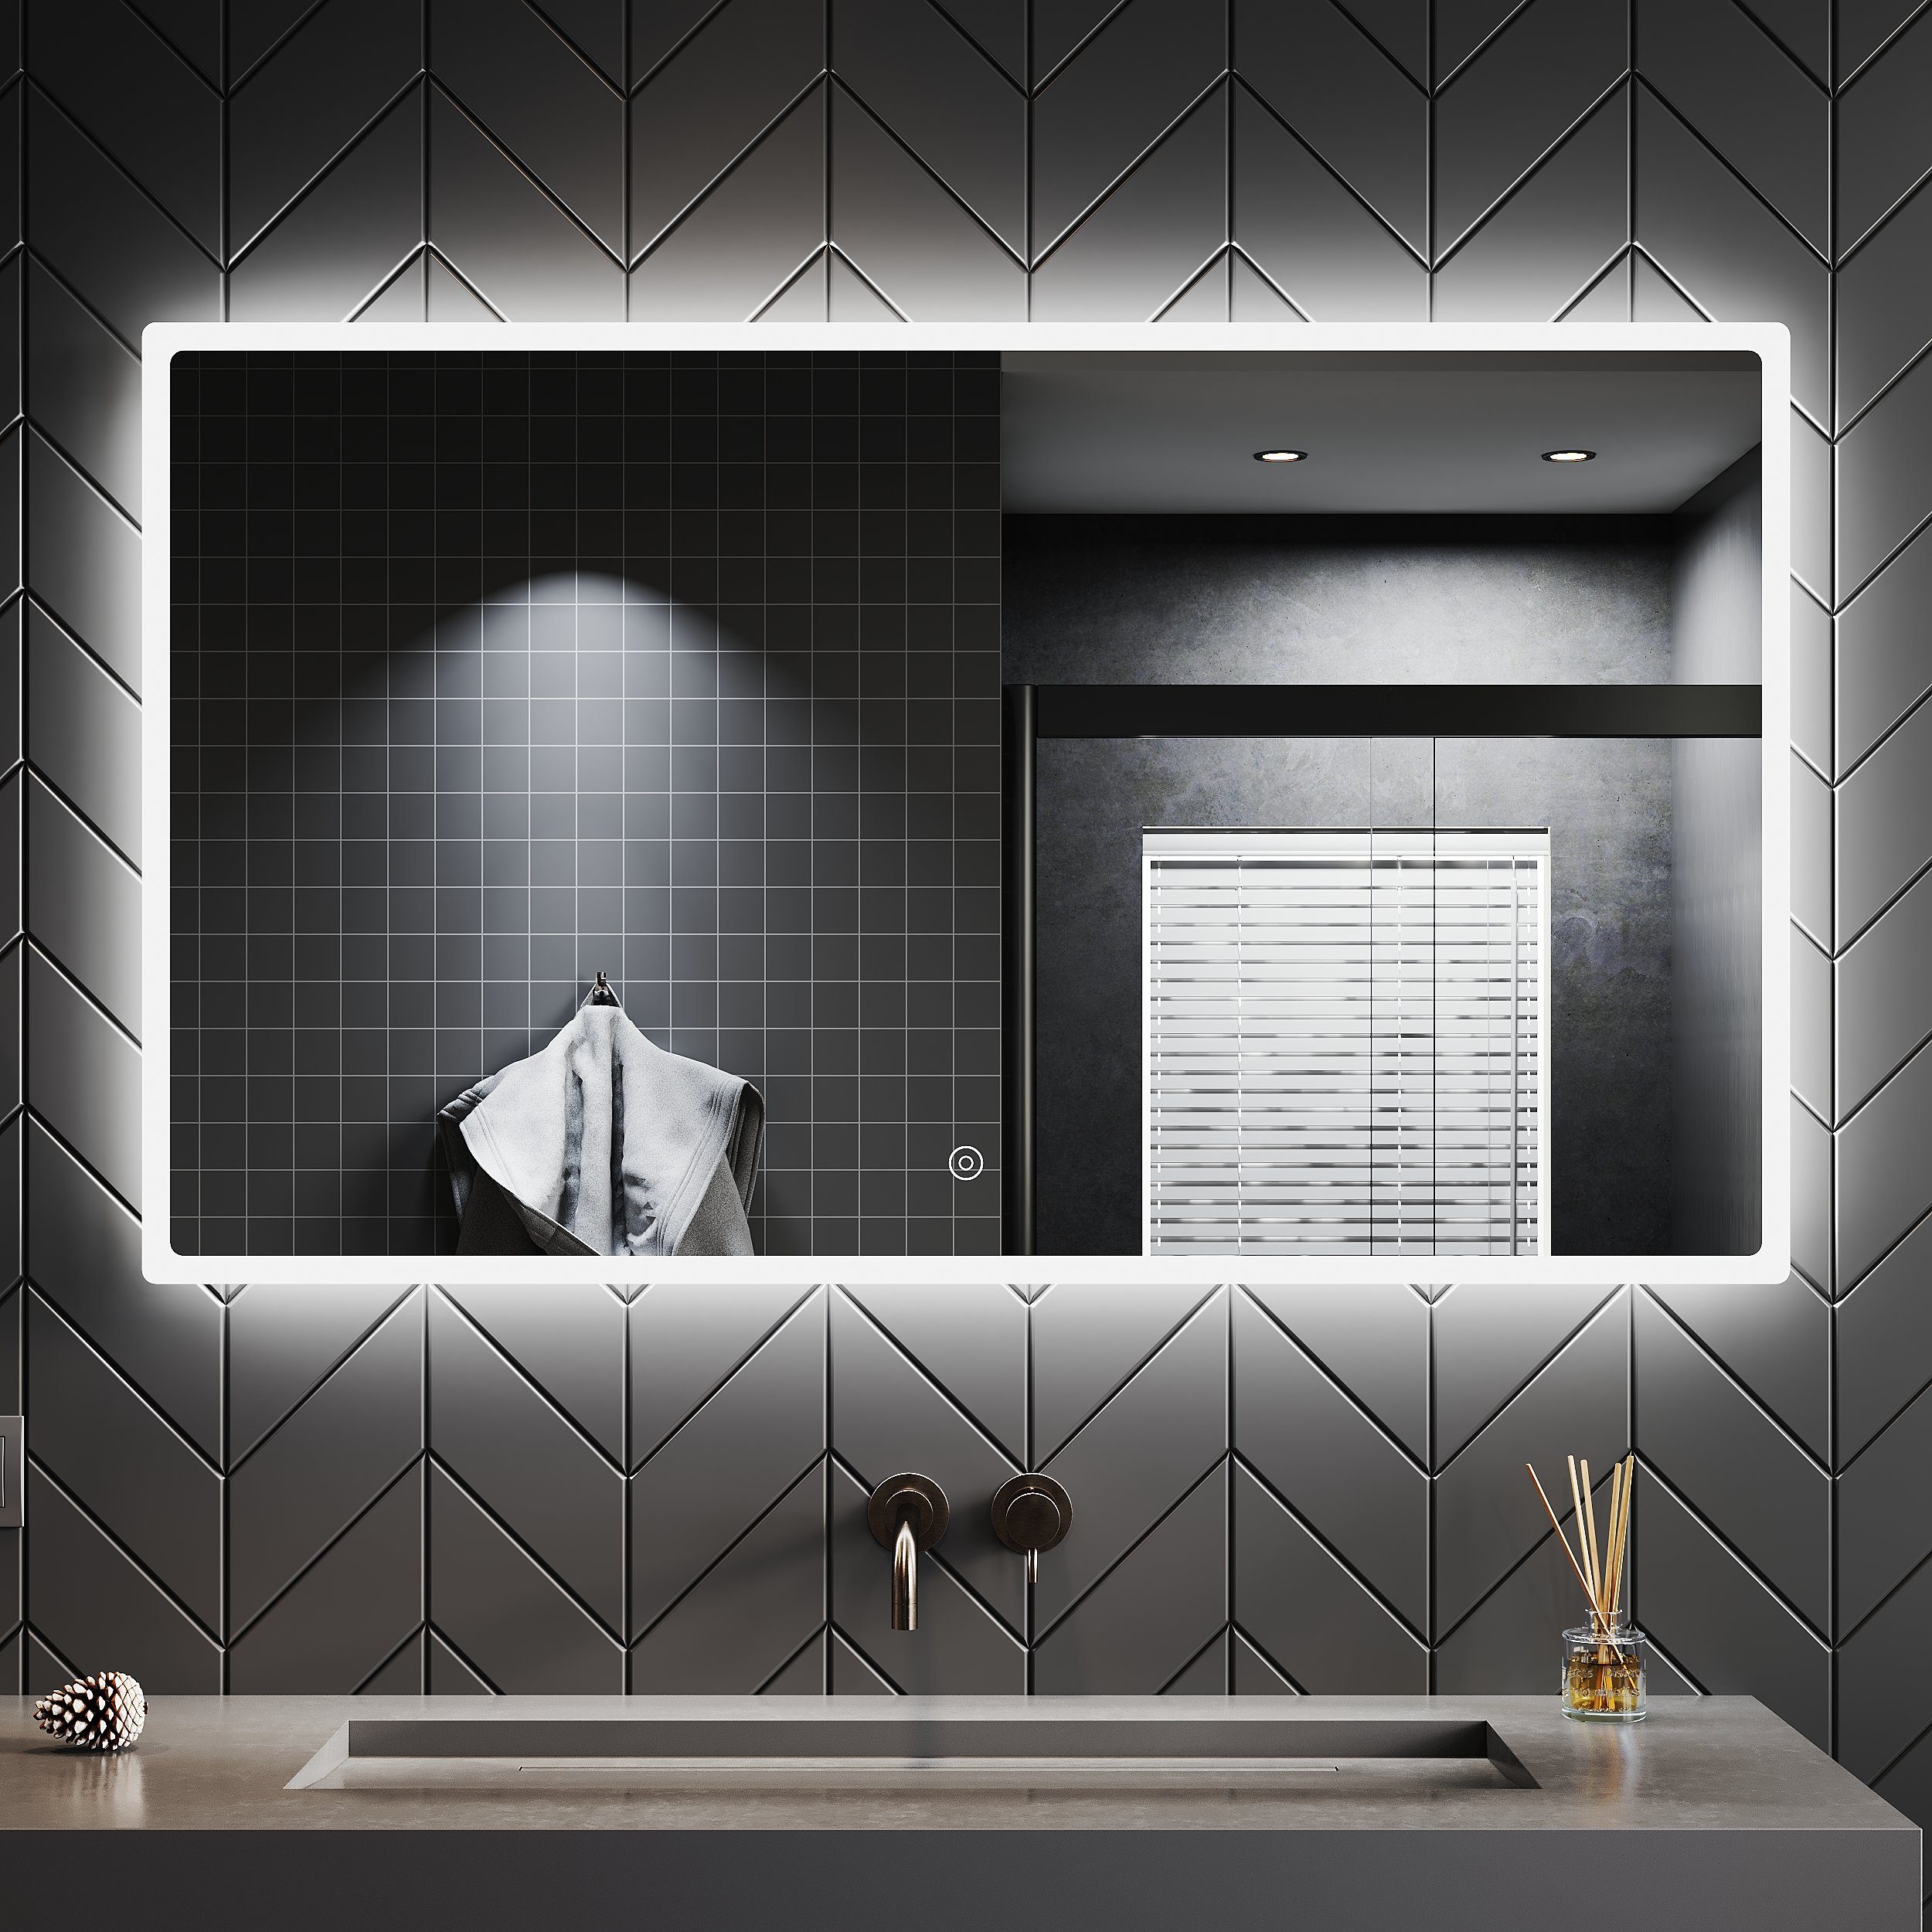 SONNI Badspiegel Bad Spiegel LED, Beschlagfrei, 120 x 60,  Badezimmerspiegel, Anti-Beschlag-Funktion, mit Beleuchtung, Touch Schalter,  Energiesparend